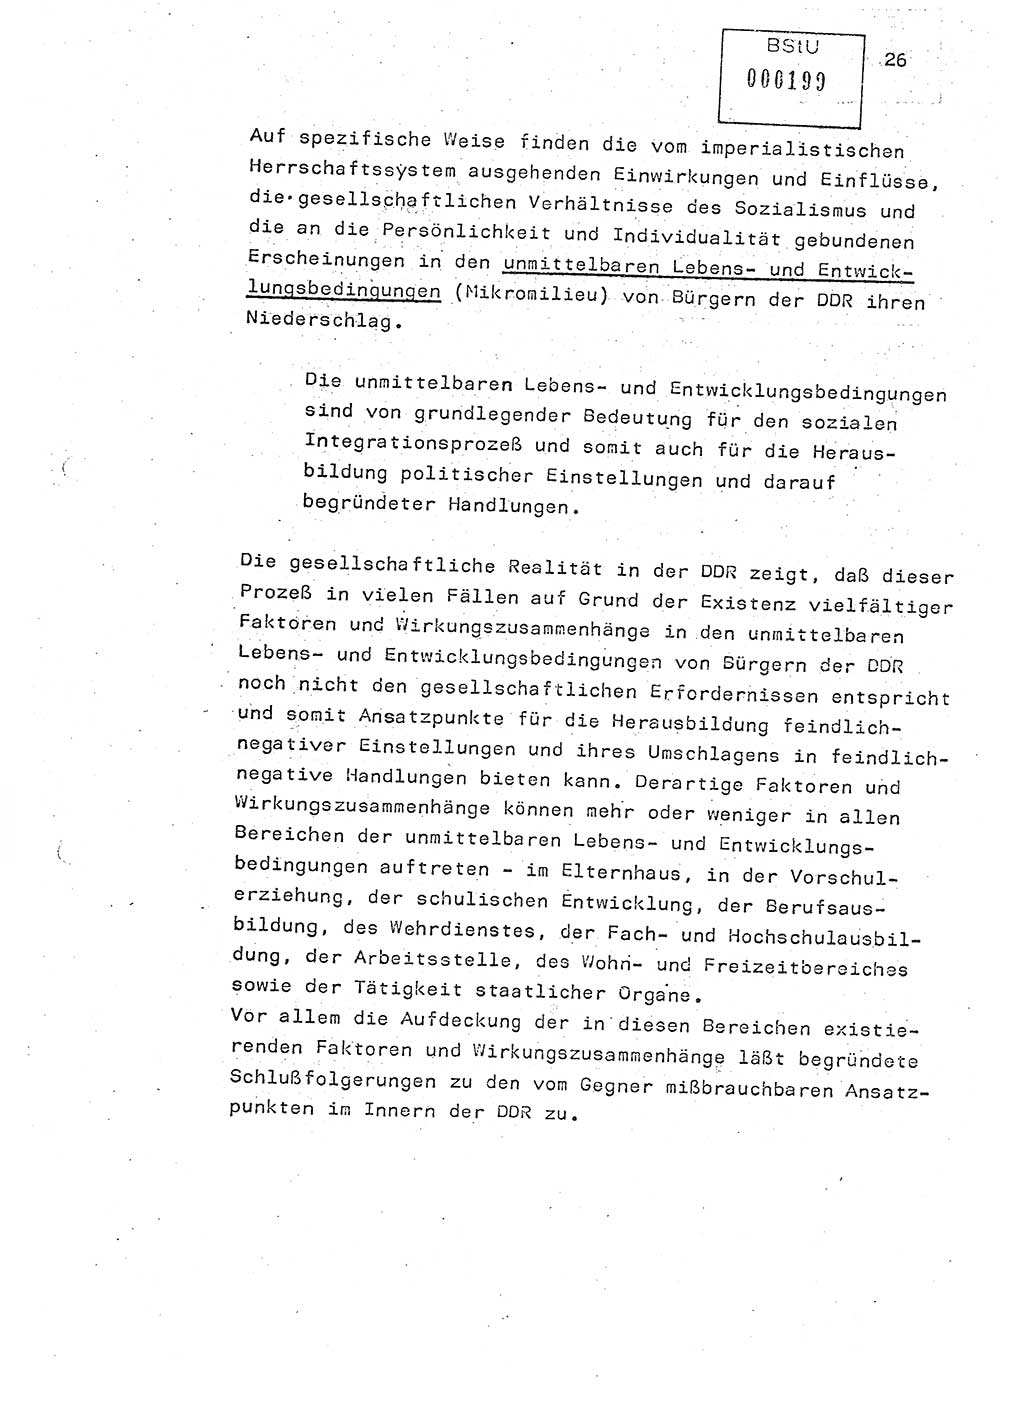 Studienmaterial Ministerium für Staatssicherheit (MfS) [Deutsche Demokratische Republik (DDR)], Hauptabteilung (HA) Ⅸ/ Auswertungs- und Kontrollgruppe (AKG), Berlin ca. 1986, Seite 26 (Stud.-Mat. MfS DDR HA Ⅸ/AKG 1986, S. 26)